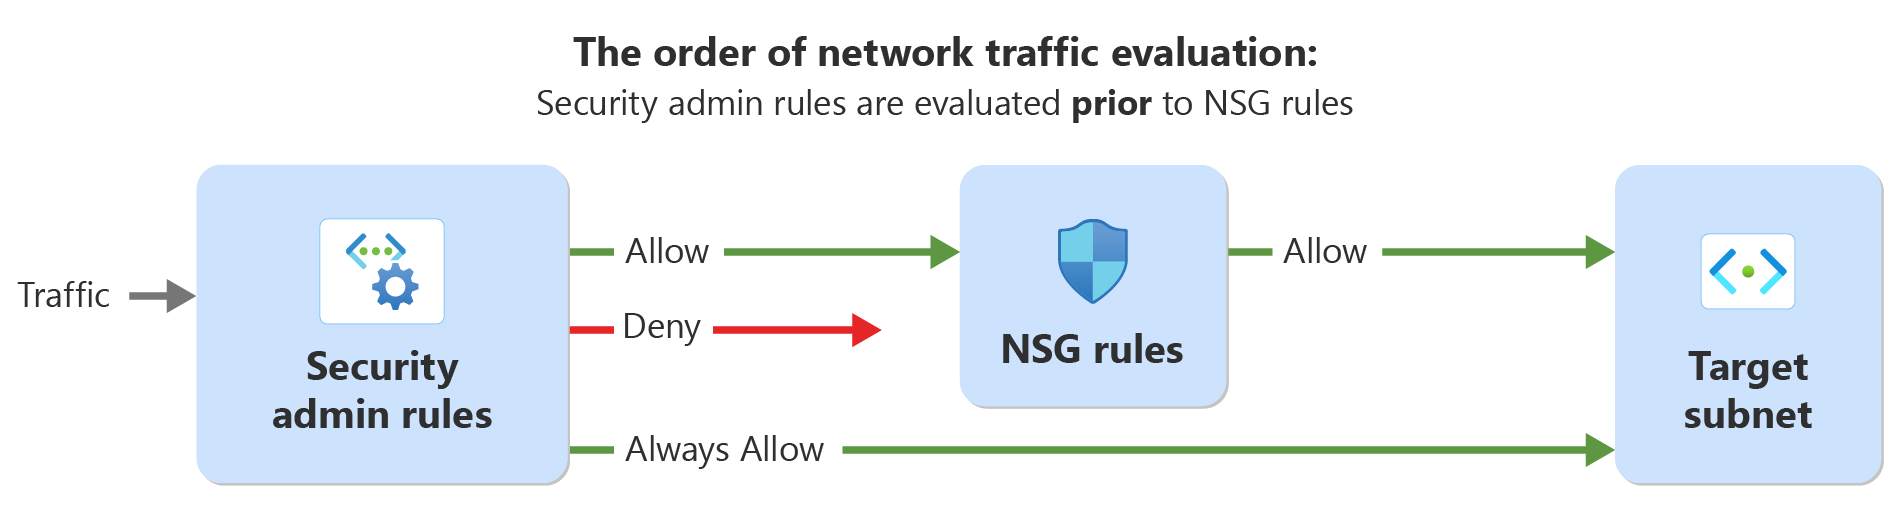 顯示網路流量評估順序的圖表，其中包含安全性系統管理員規則和網路安全性規則。